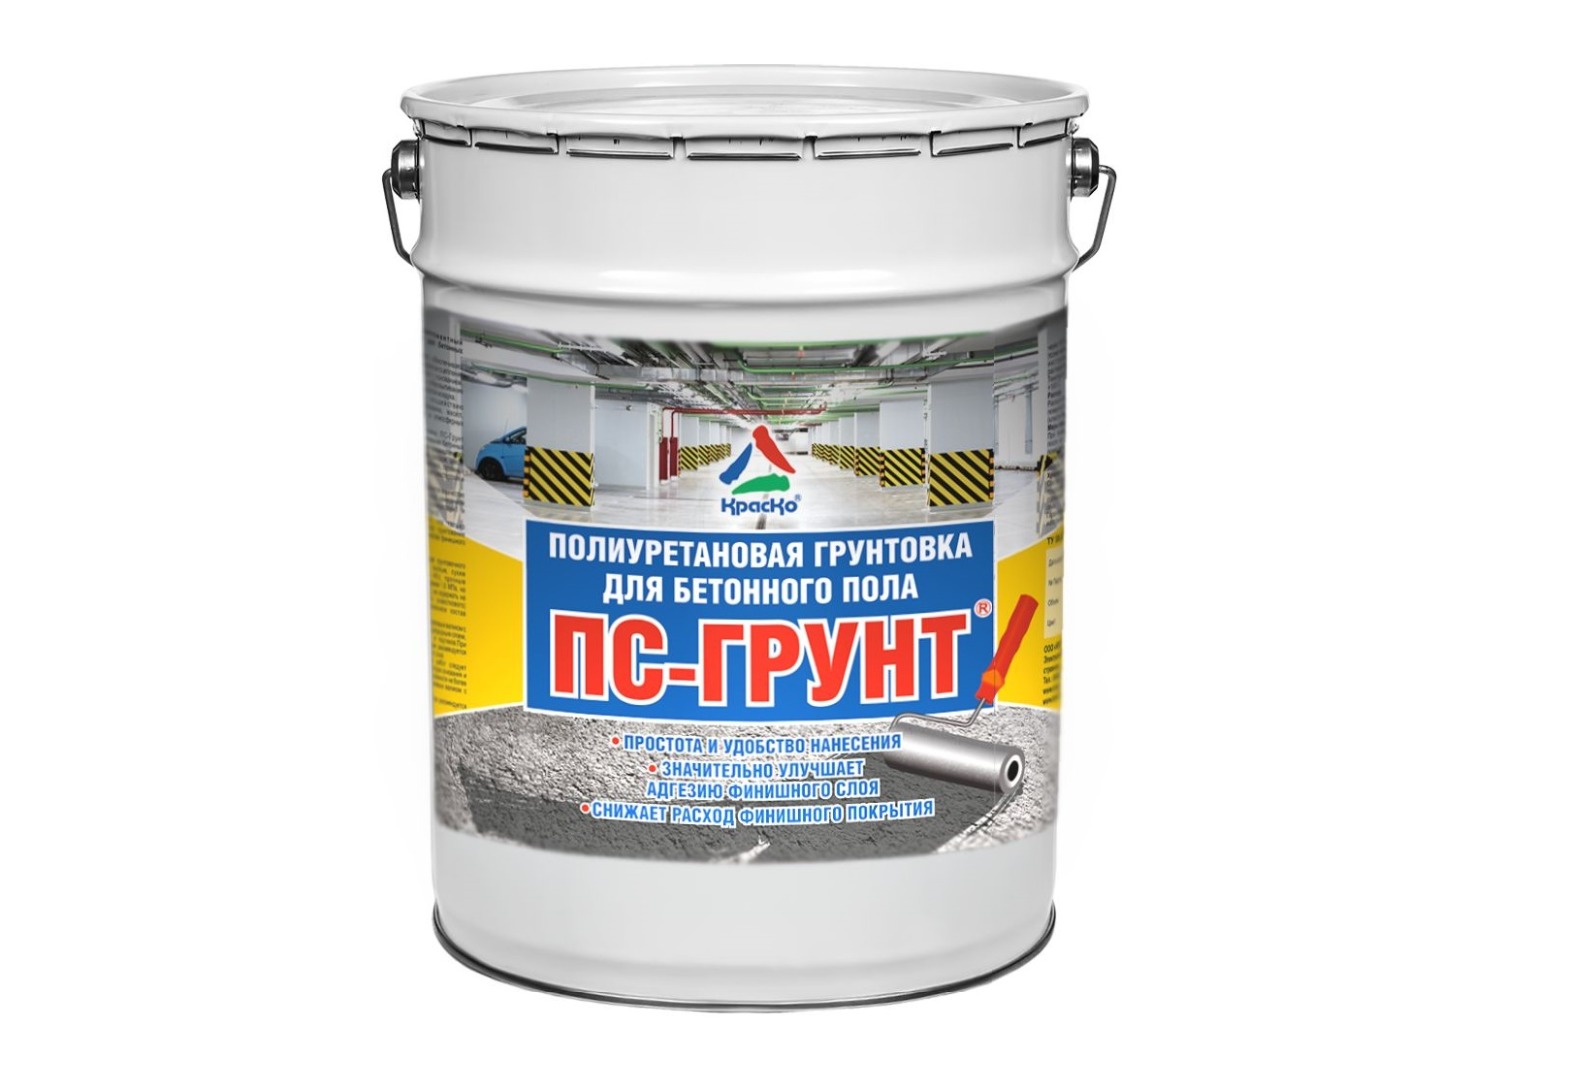 ПС-грунт полиуретановая грунтовка для бетонного пола